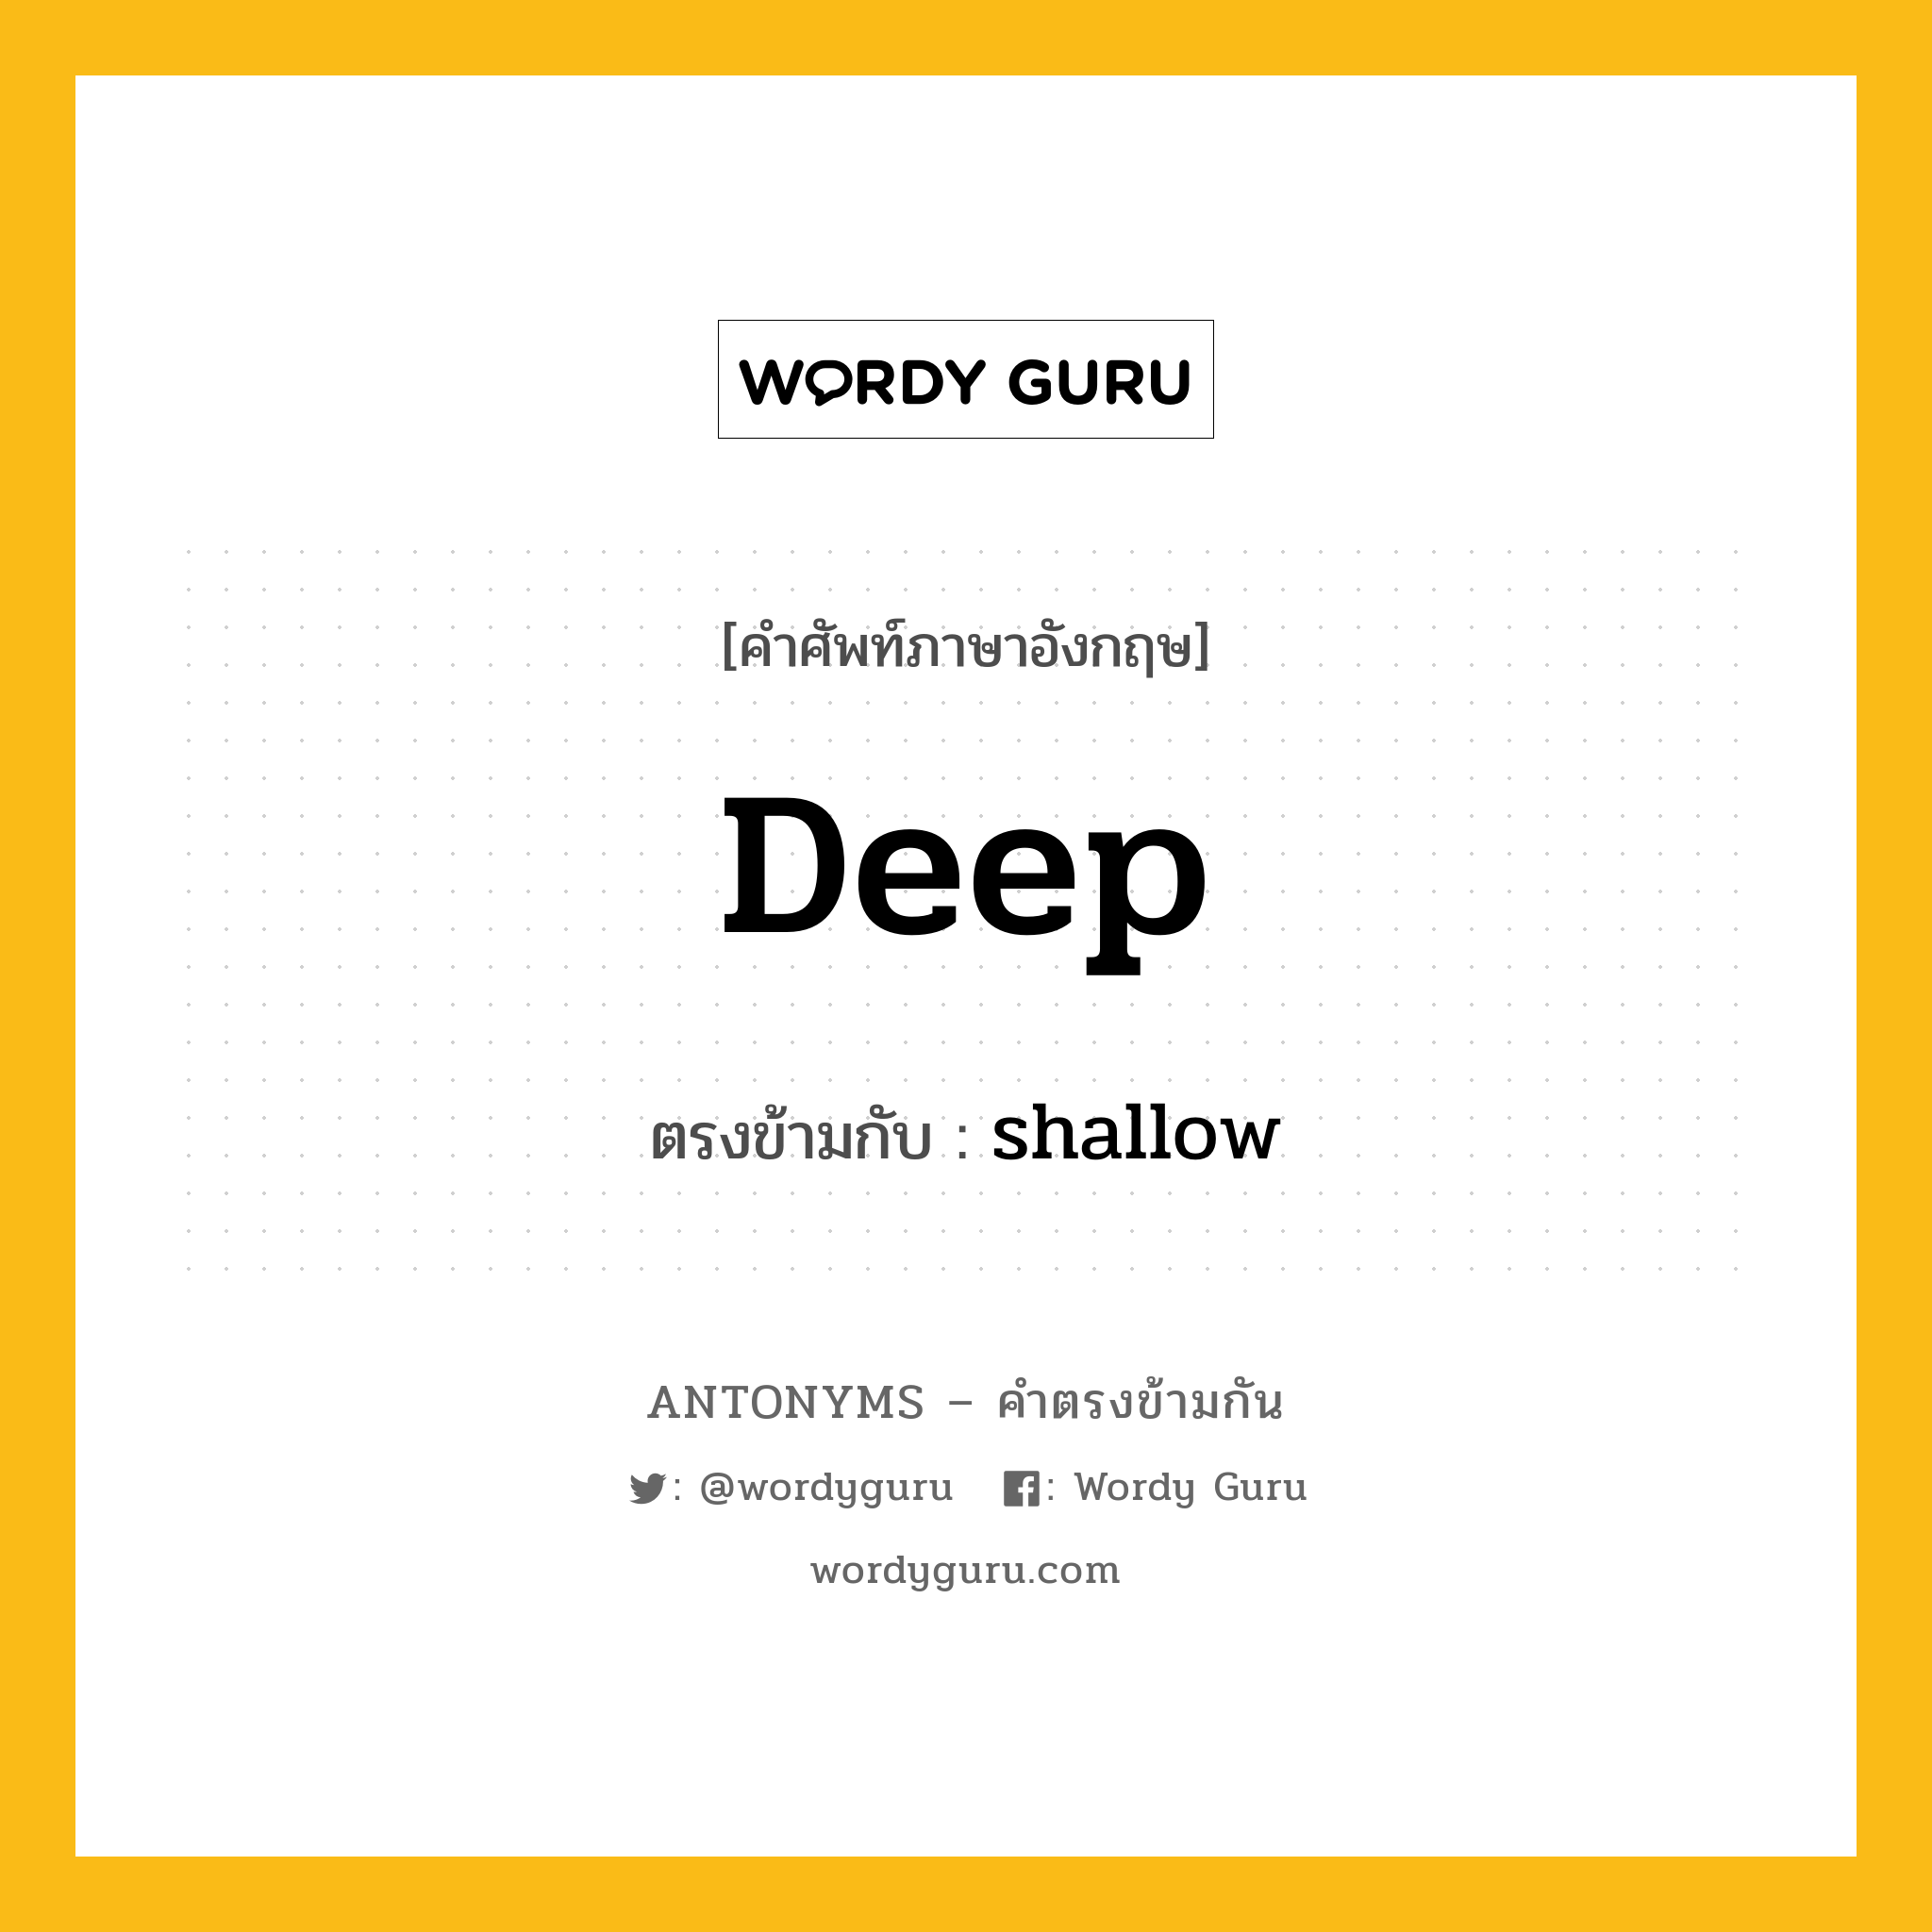 deep เป็นคำตรงข้ามกับคำไหนบ้าง?, คำศัพท์ภาษาอังกฤษ deep ตรงข้ามกับ shallow หมวด shallow